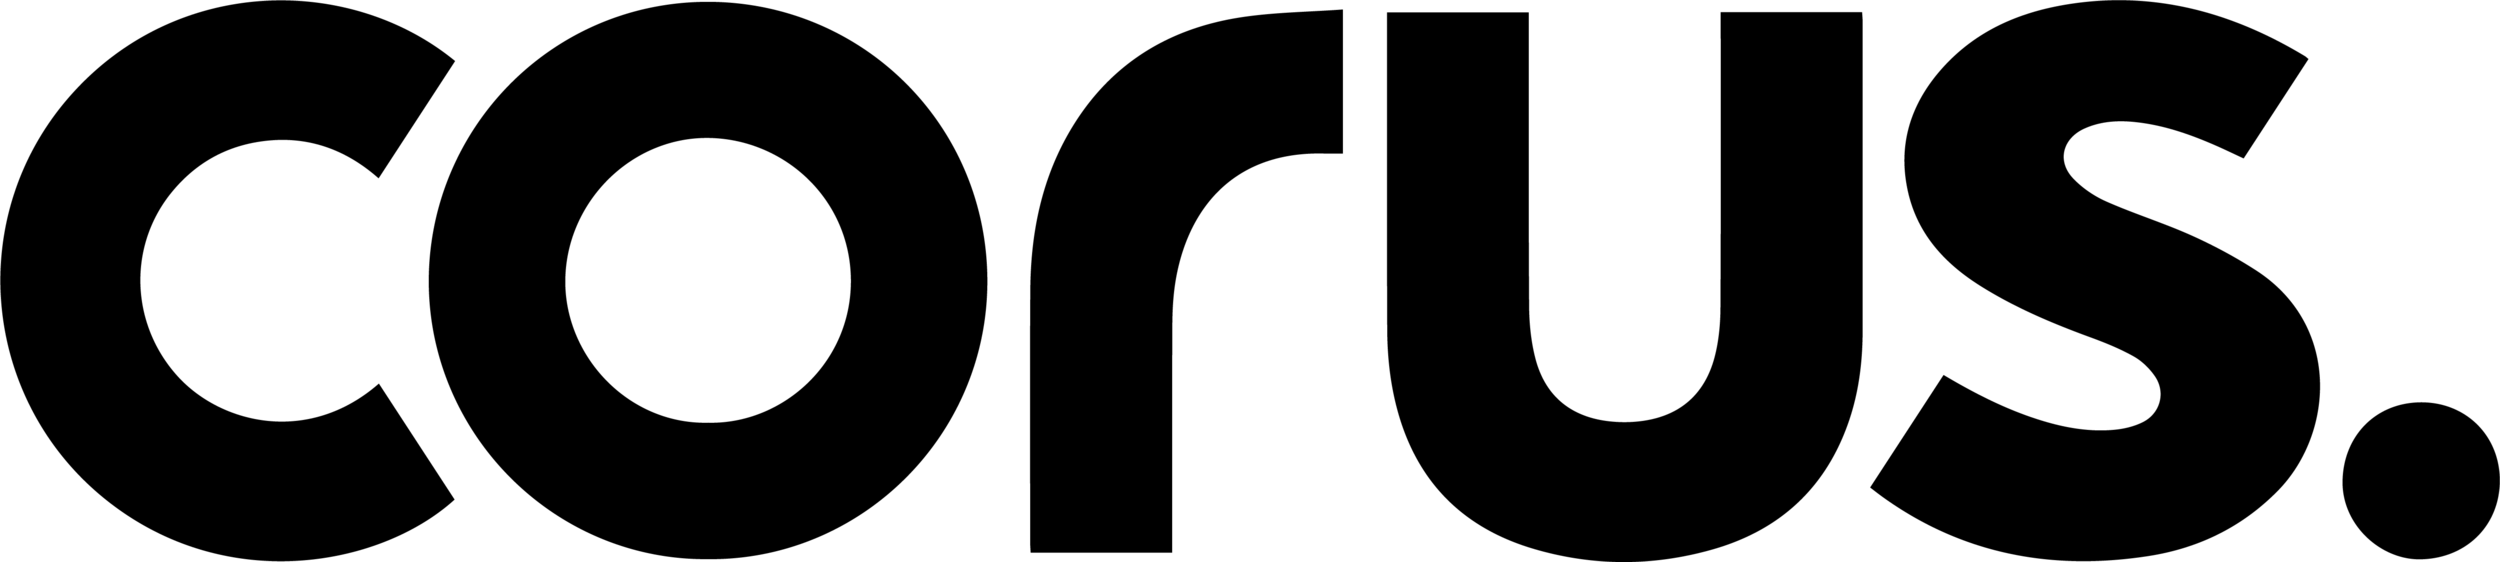 corus logo-black.png